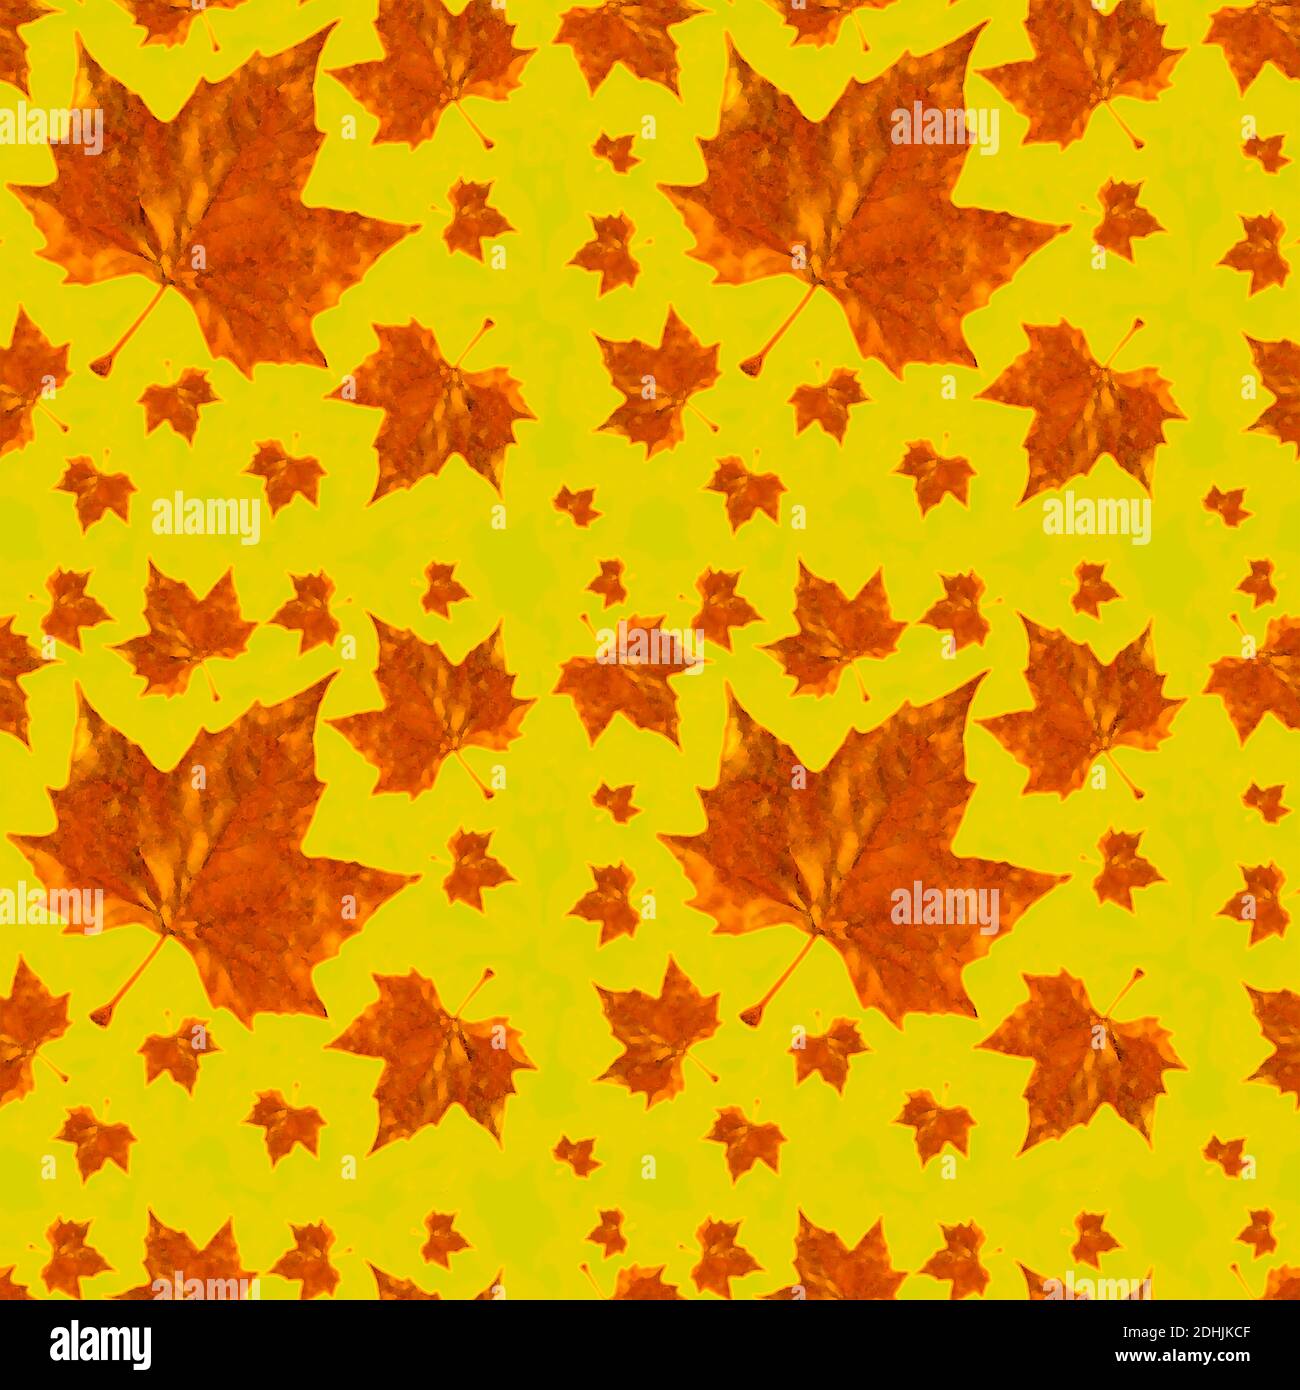 Rustikales Herbstliches Nahtloses Muster mit großen Herbstblättern in leuchtenden, lebendigen Farben, ideal für Schreibwaren und Stoffe, auf einem hübschen Zitronenhintergrund Stockfoto